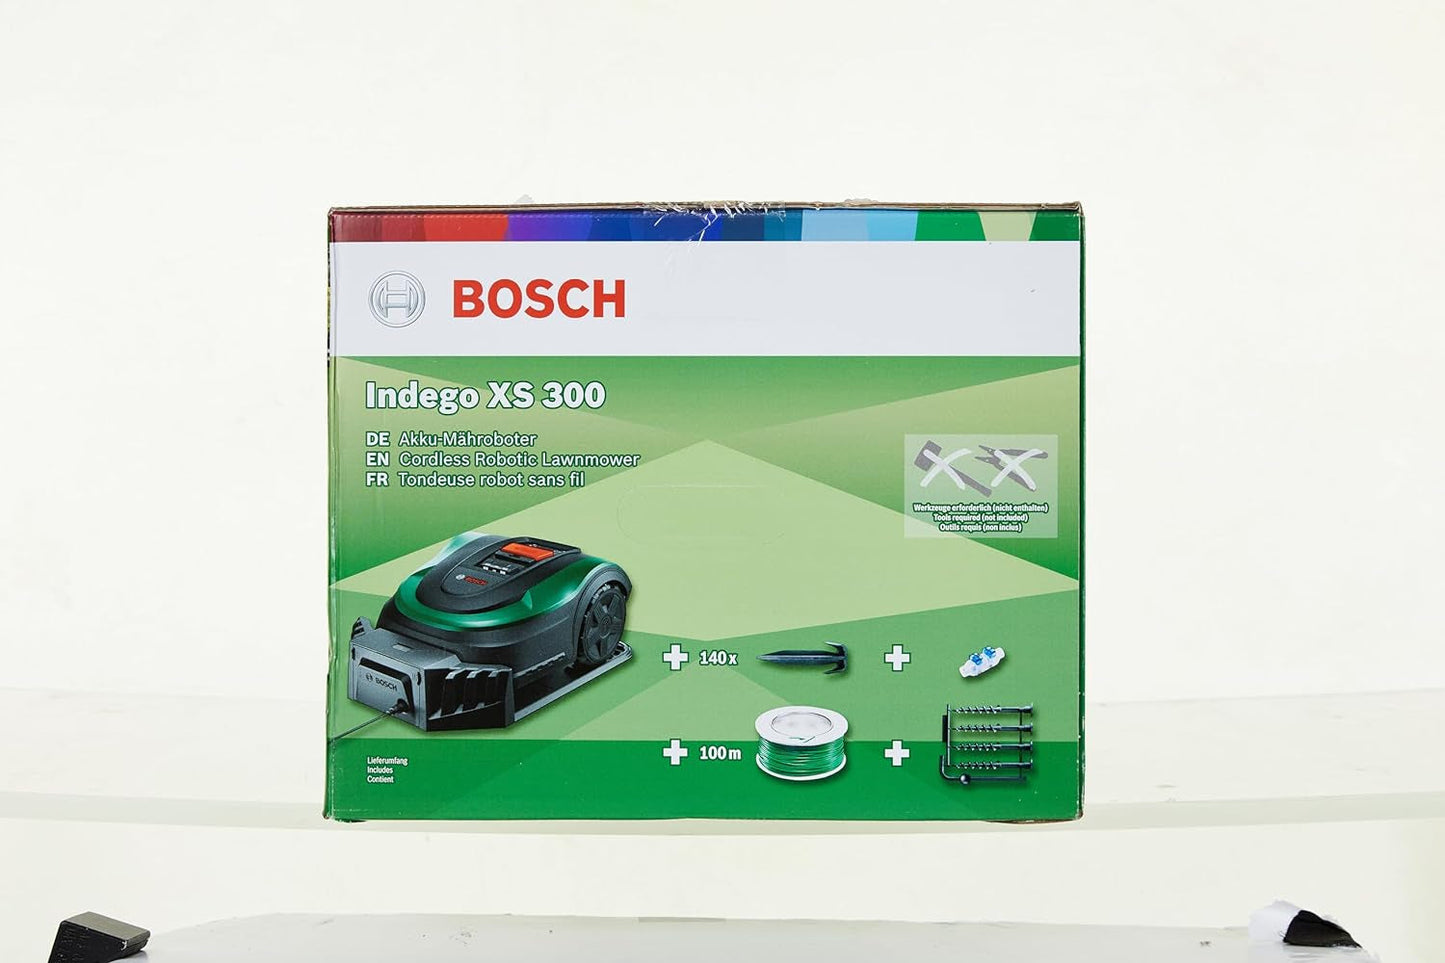 Bosch Home and Garden Rasenmäher Roboter Indego XS 300 (Mit Integriertem 18-V-Akku, Ladestation Enthalten, Schnittbreite 19 Cm, Für Rasenflächen Bis Zu 300 M², Im Karton) Schwarz, Grün